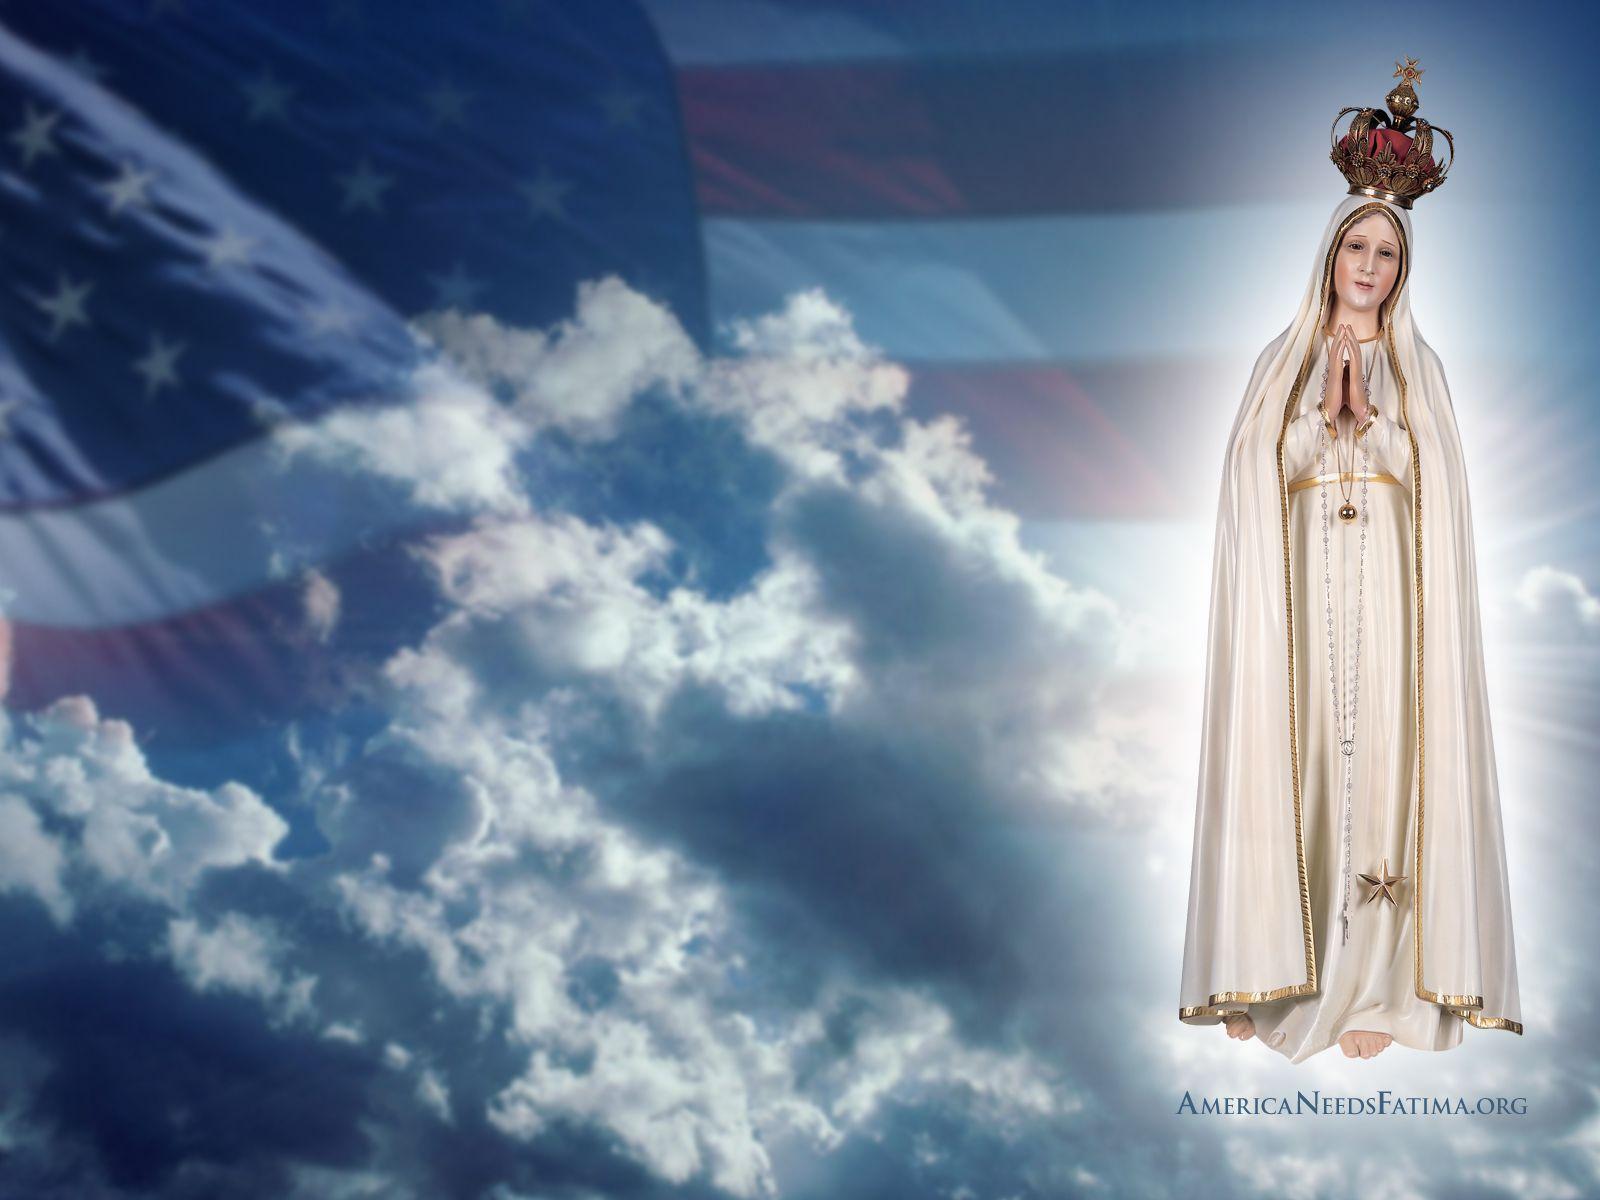 The America Needs Fatima Blog: Welcome To America Needs Fatima's